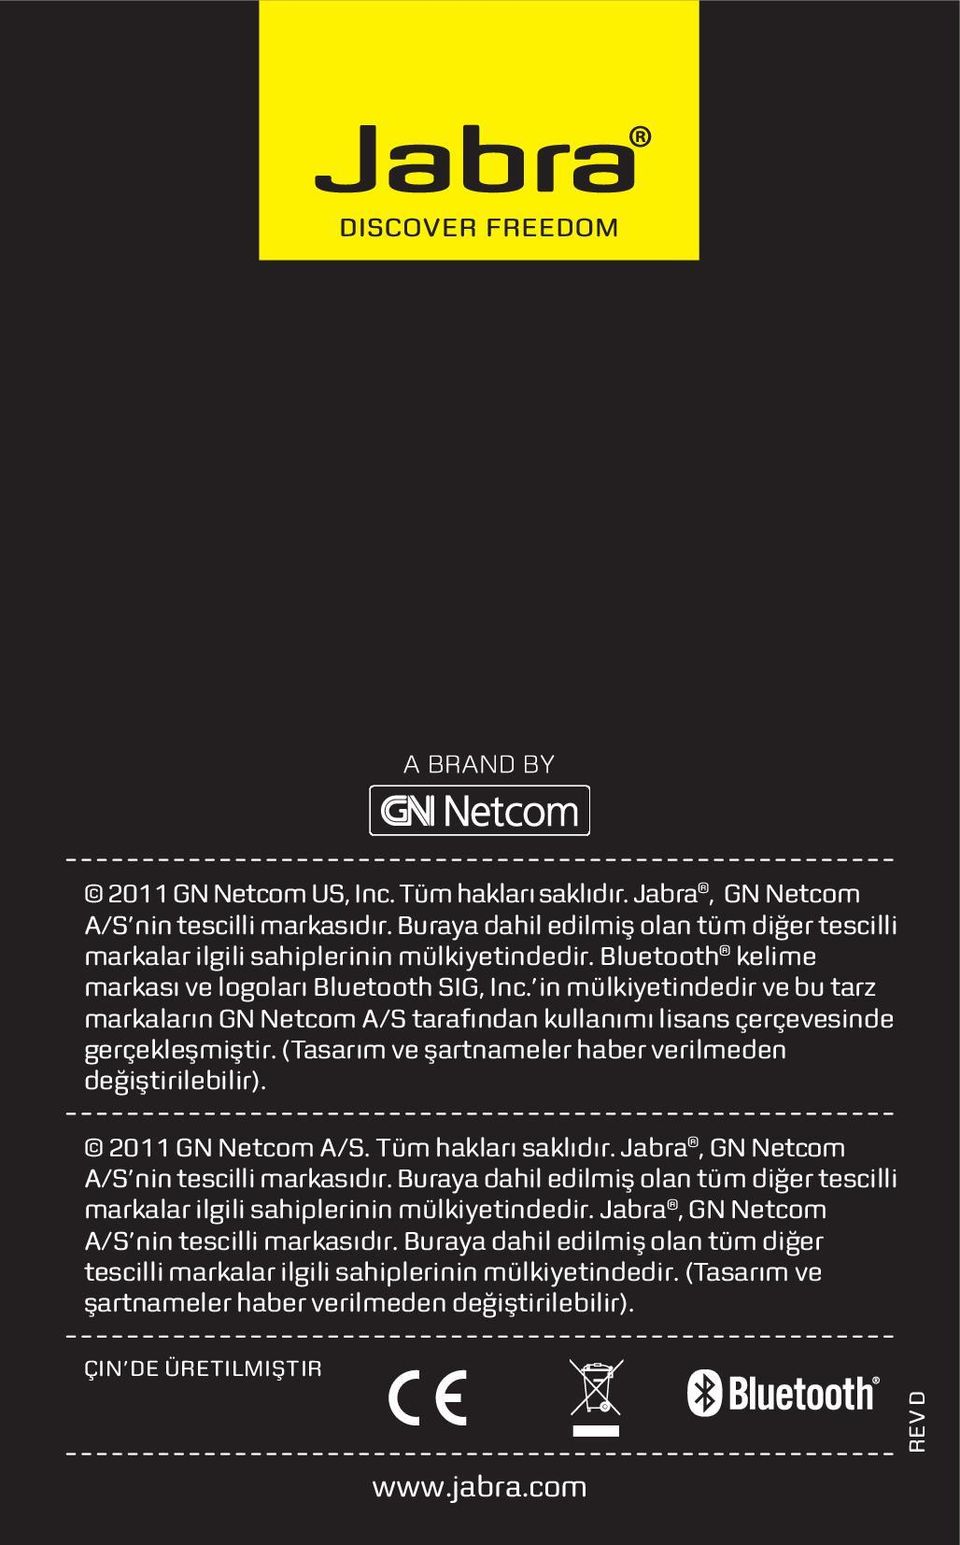 (Tasarım ve şartnameler haber verilmeden değiştirilebilir). 2011 GN Netcom A/S. Tüm hakları saklıdır. Jabra, GN Netcom A/S nin tescilli markasıdır.